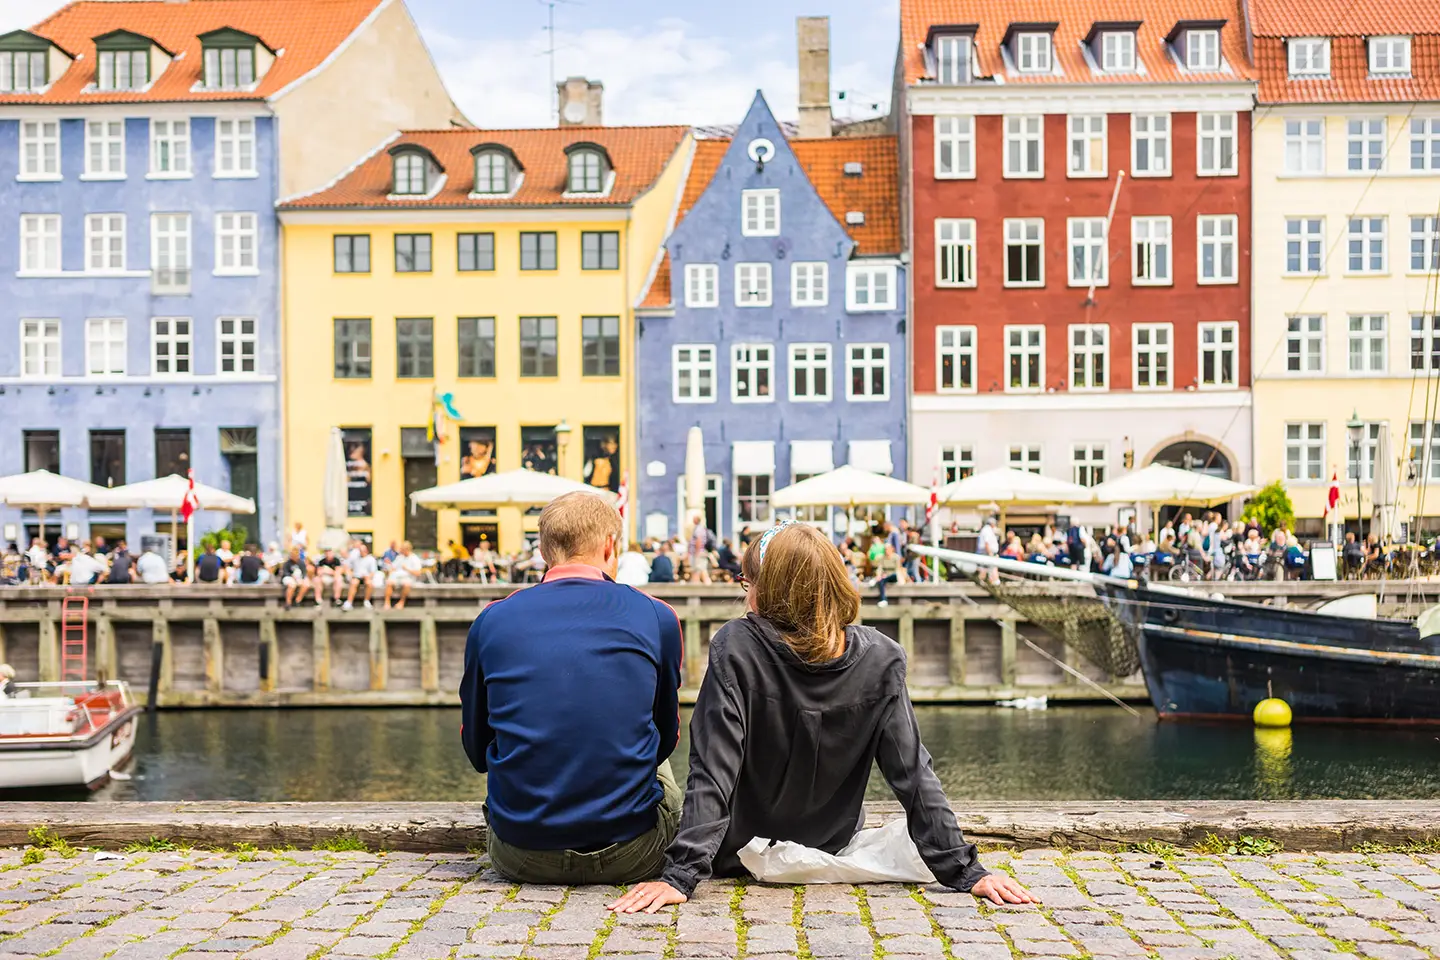 Kopenhagen Kurzurlaub mit Besuch von Nyhavn mit seinen bunten Häusern welche den Kanal säumen.